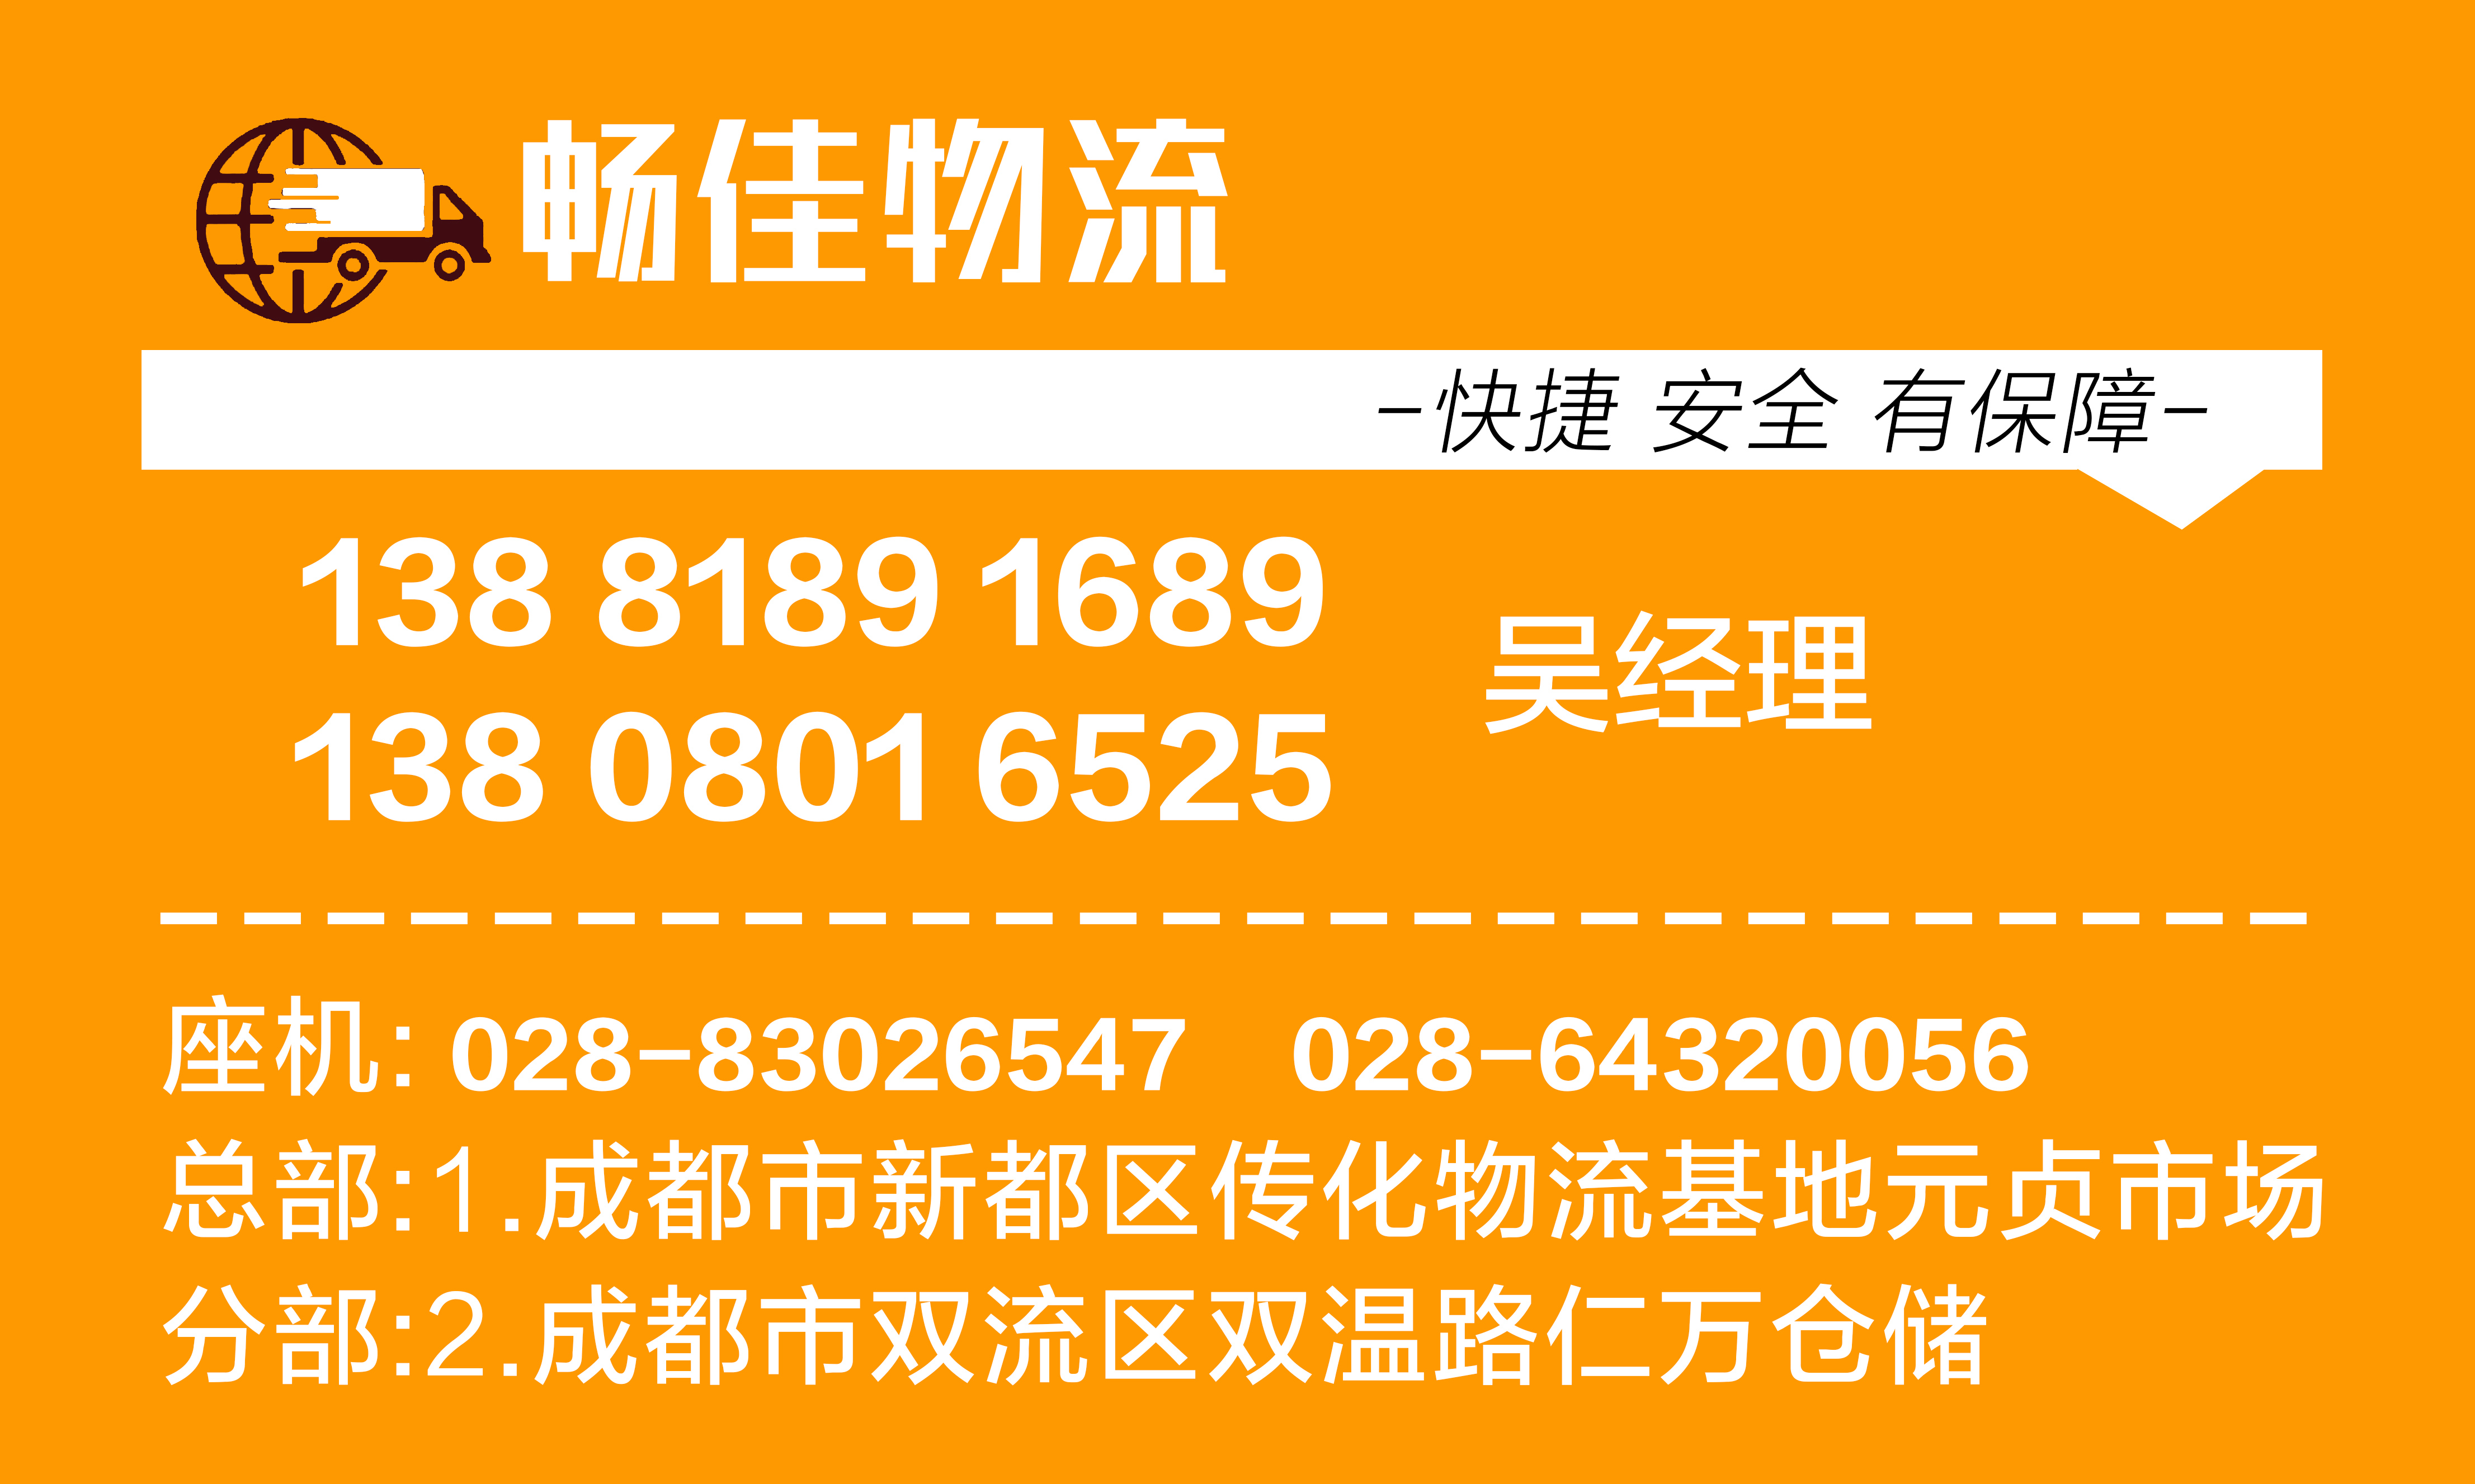 成都到安徽亳州物流公司-成都到安徽亳州物流专线几天、价格、电话、2021年